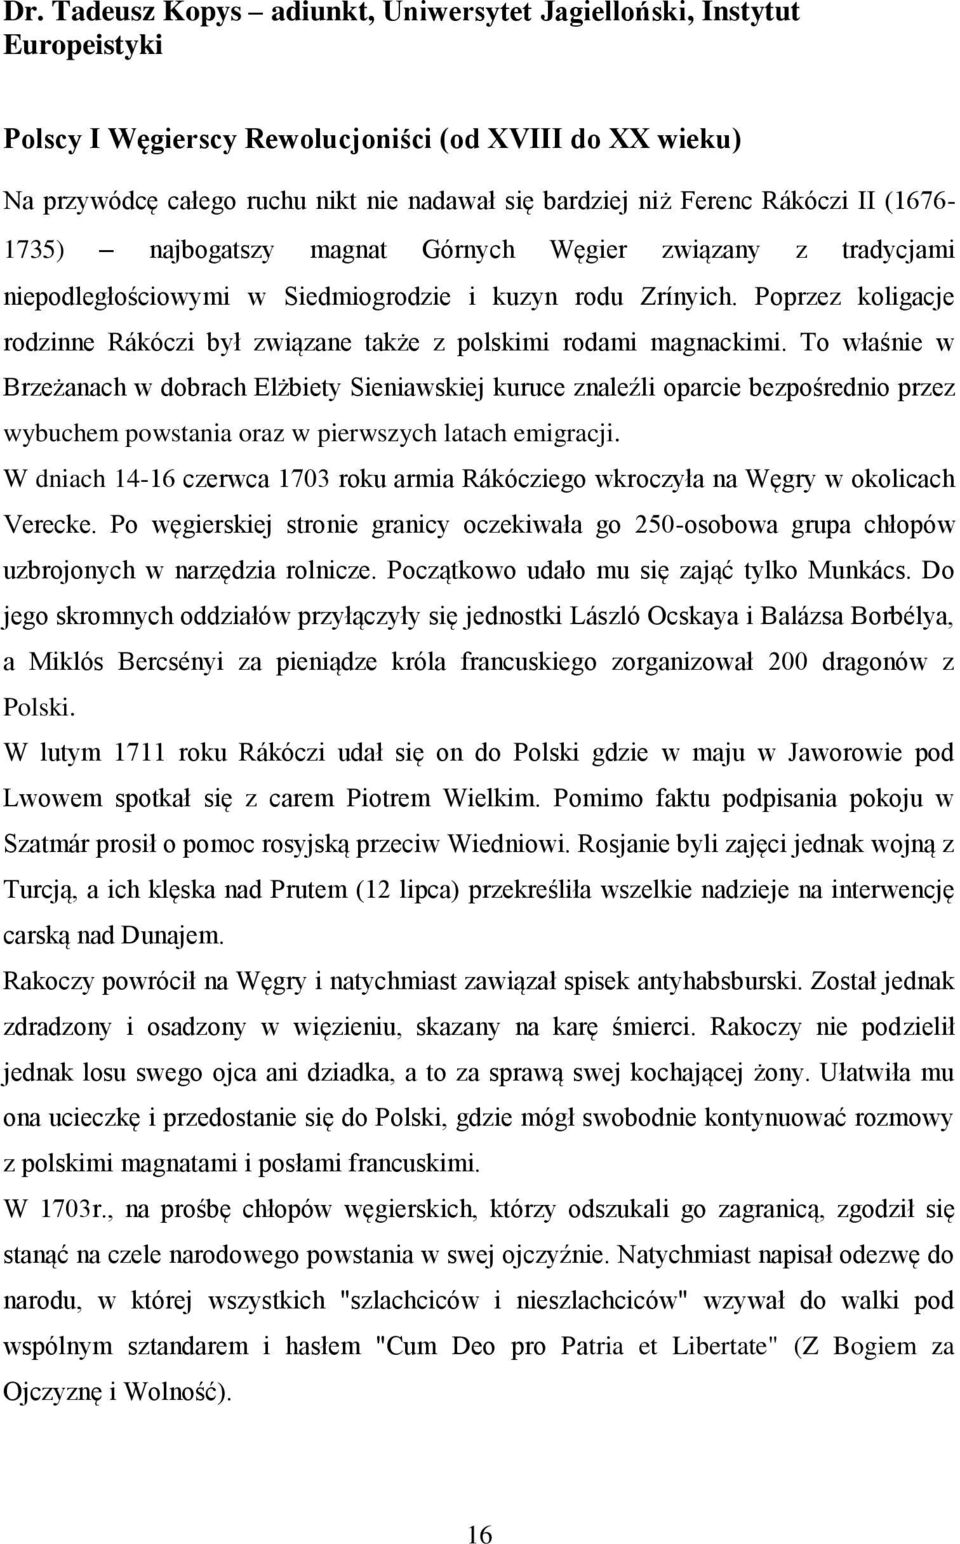 Poprzez koligacje rodzinne Rákóczi był związane także z polskimi rodami magnackimi.